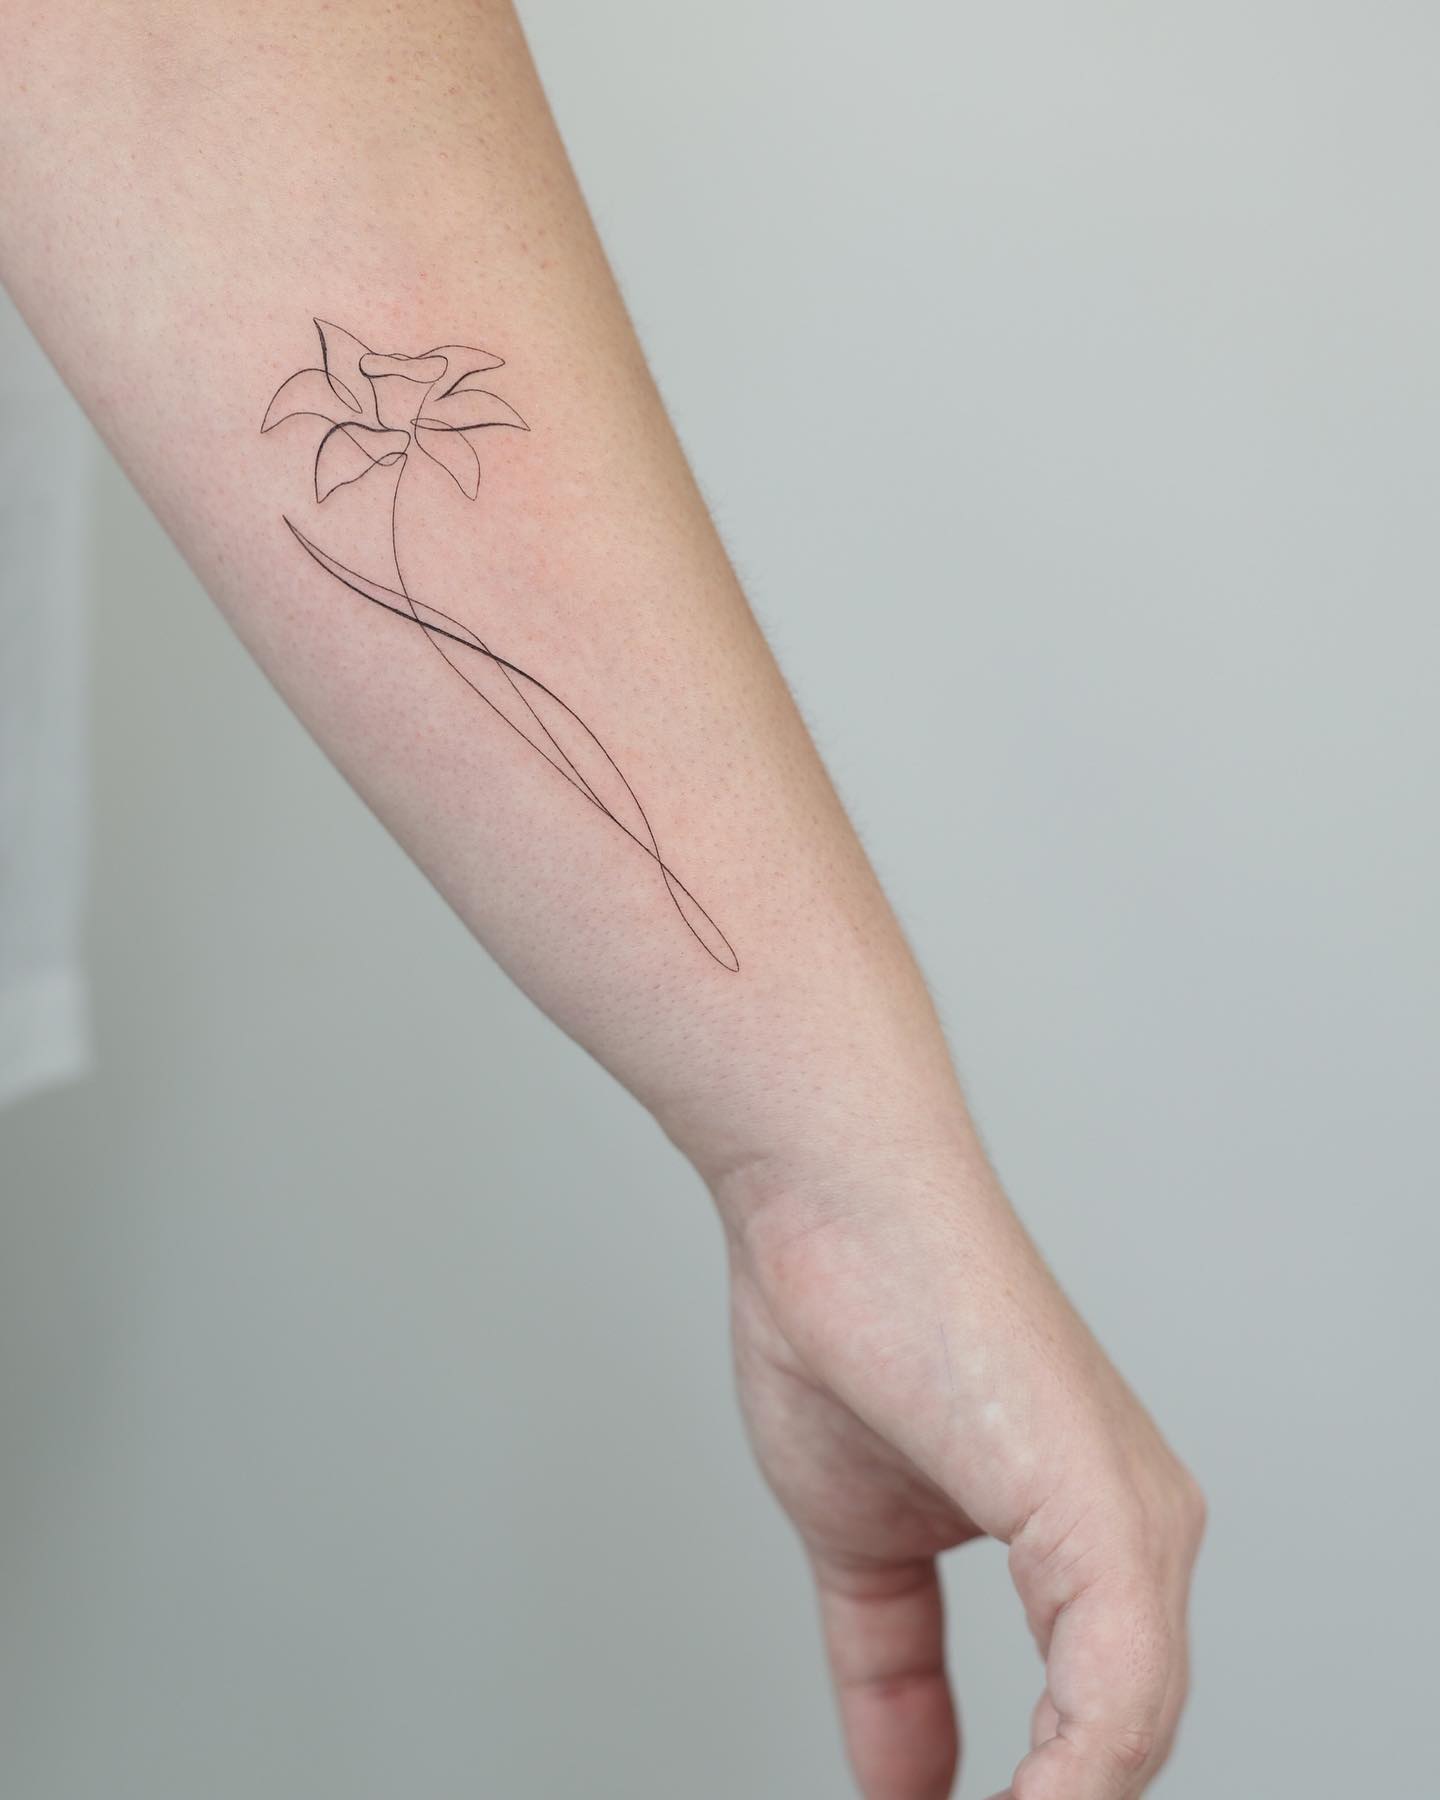 Tatuajes de flores narcisos: Una flor desconocida para muchos pero llena de simbolismo